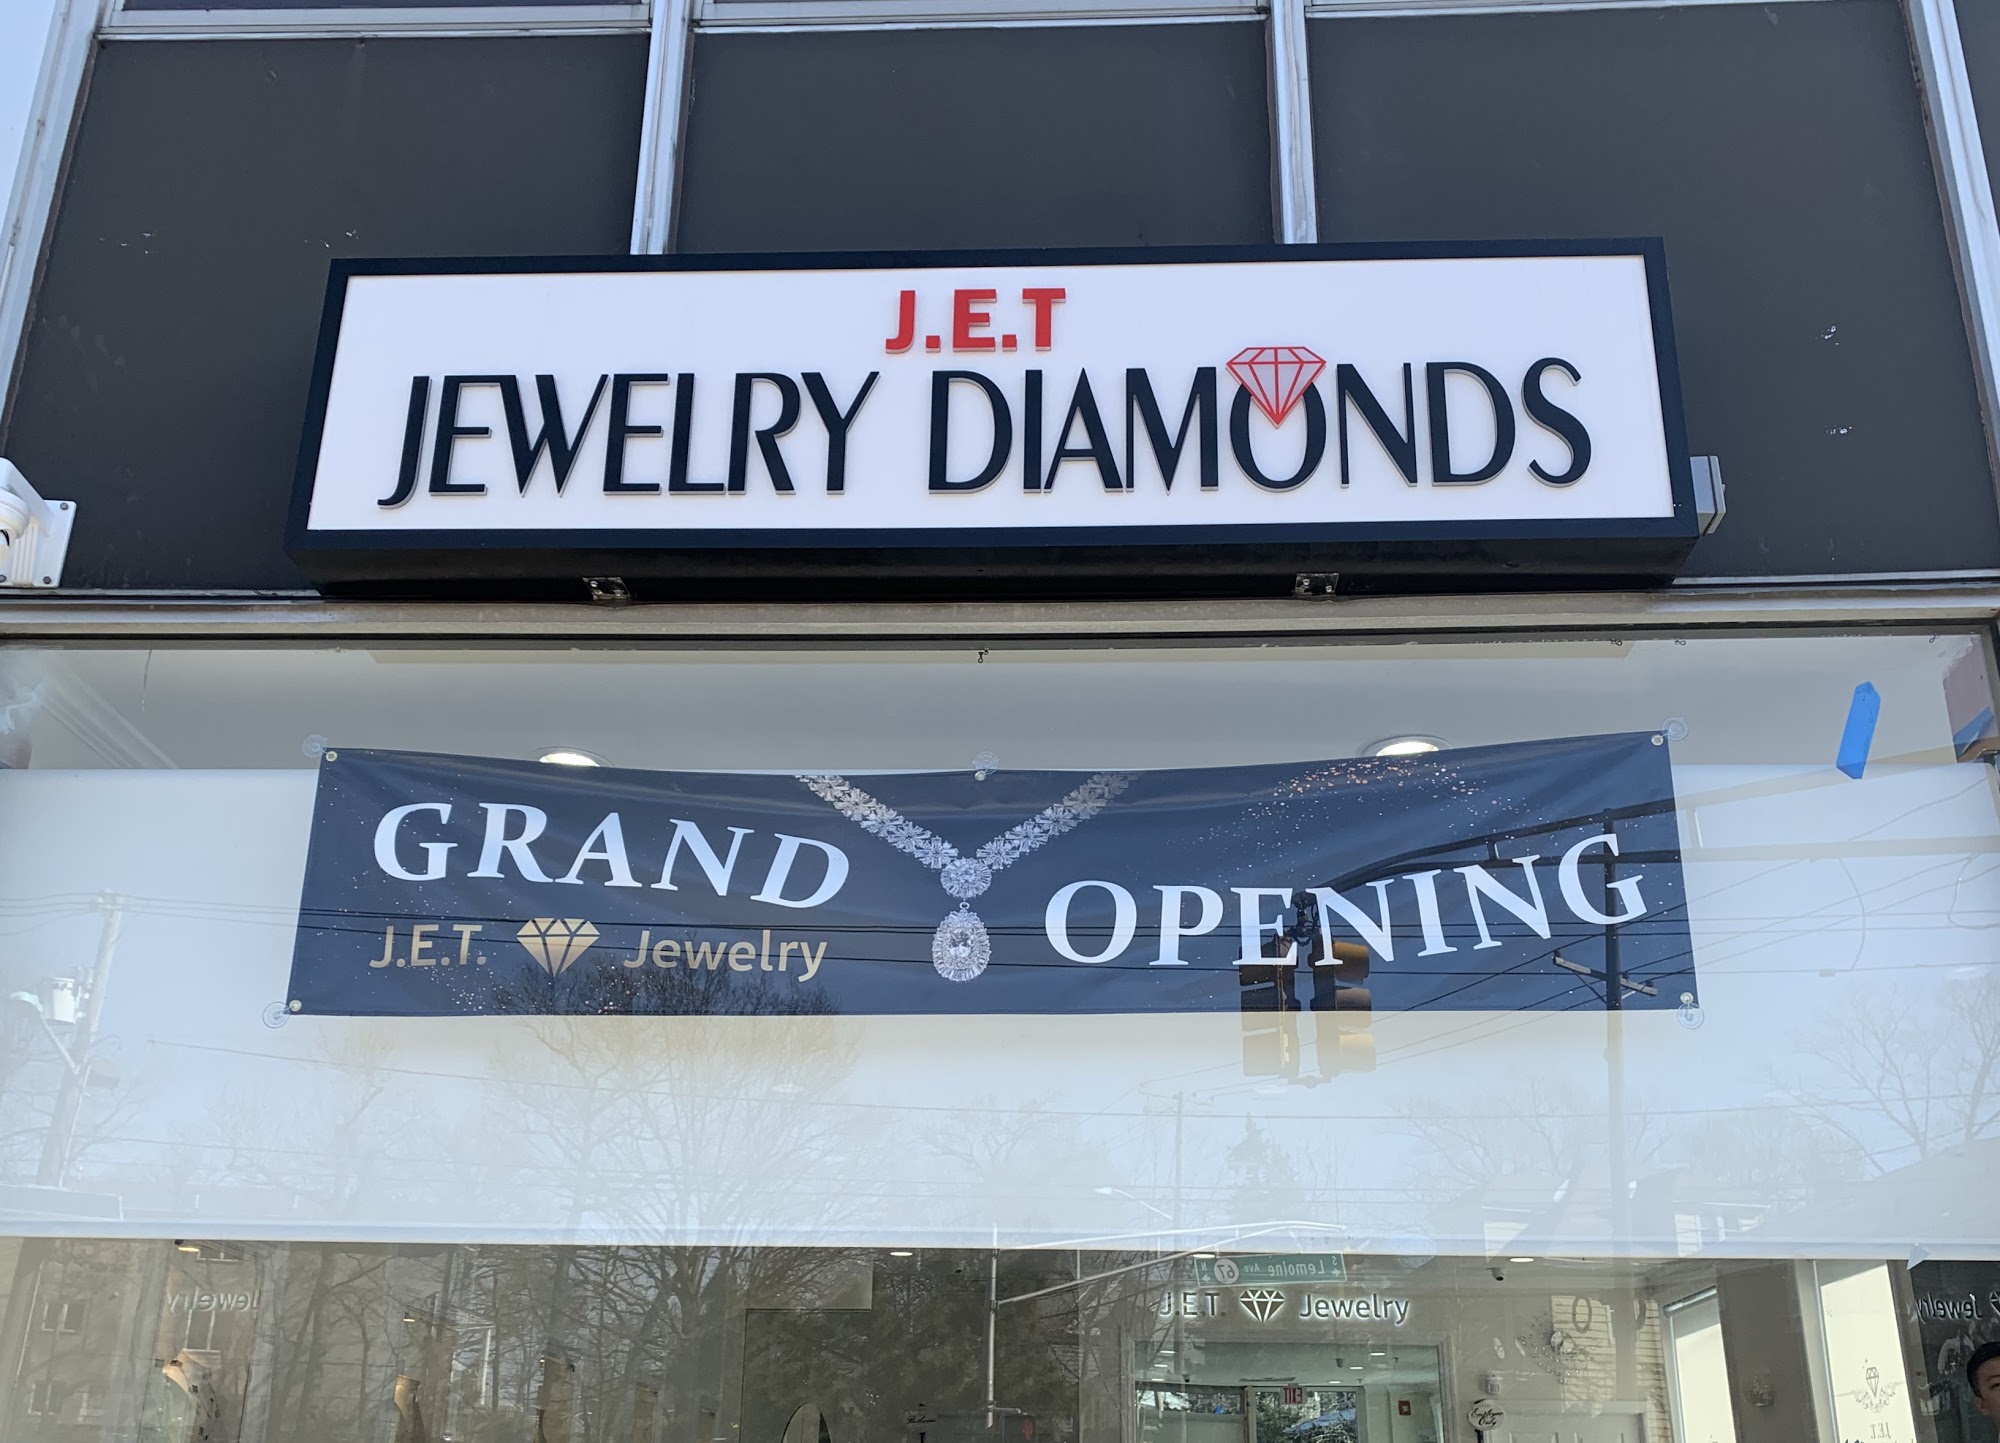 J.E.T. Jewelry